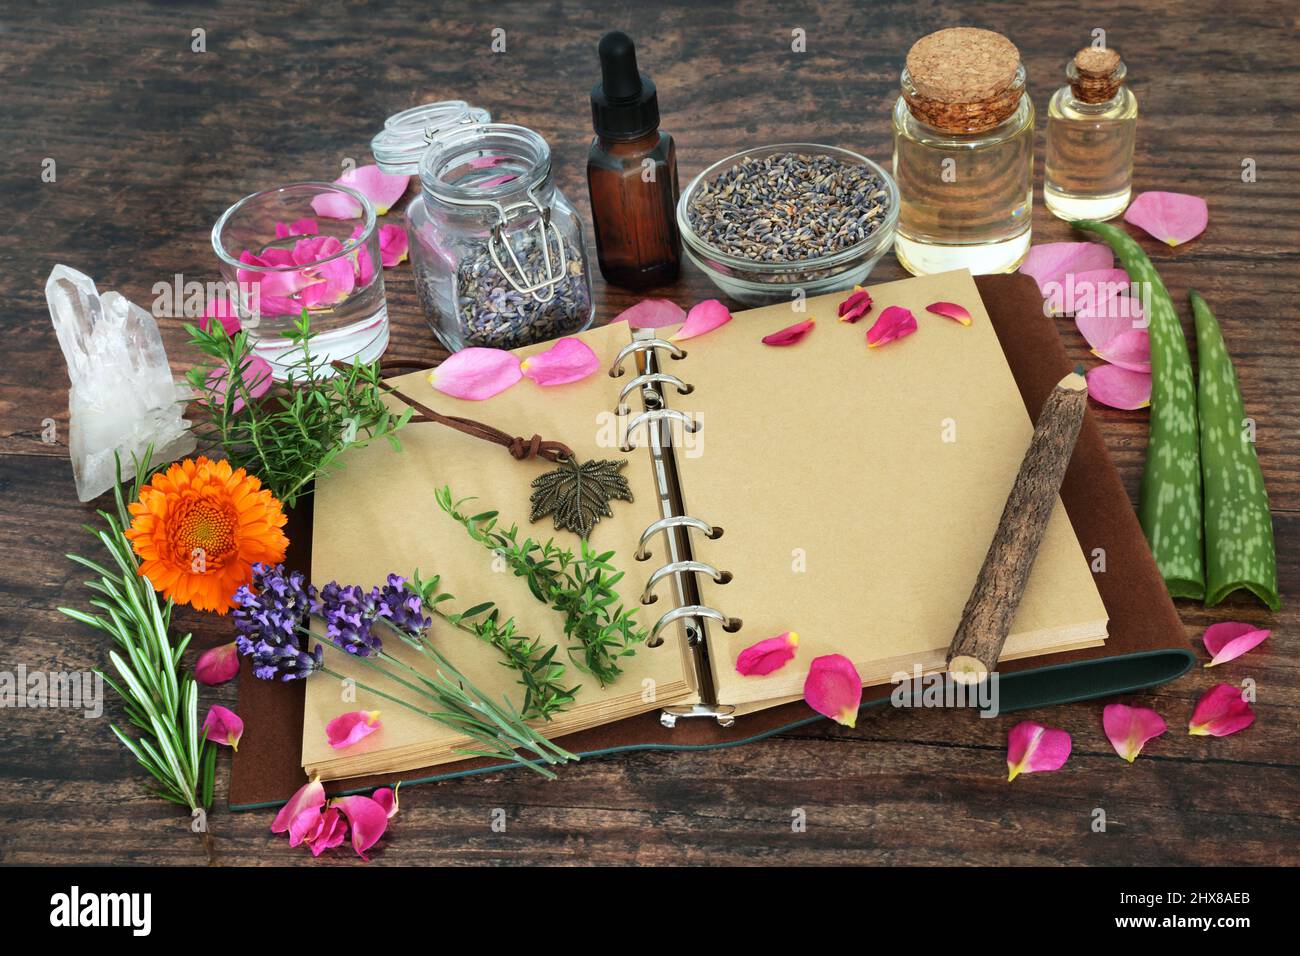 Preparación de hierbas y flores para plantas medicinales para el cuidado natural de la piel remedios florales con cuaderno de cuero abierto para recetas y notas. Foto de stock